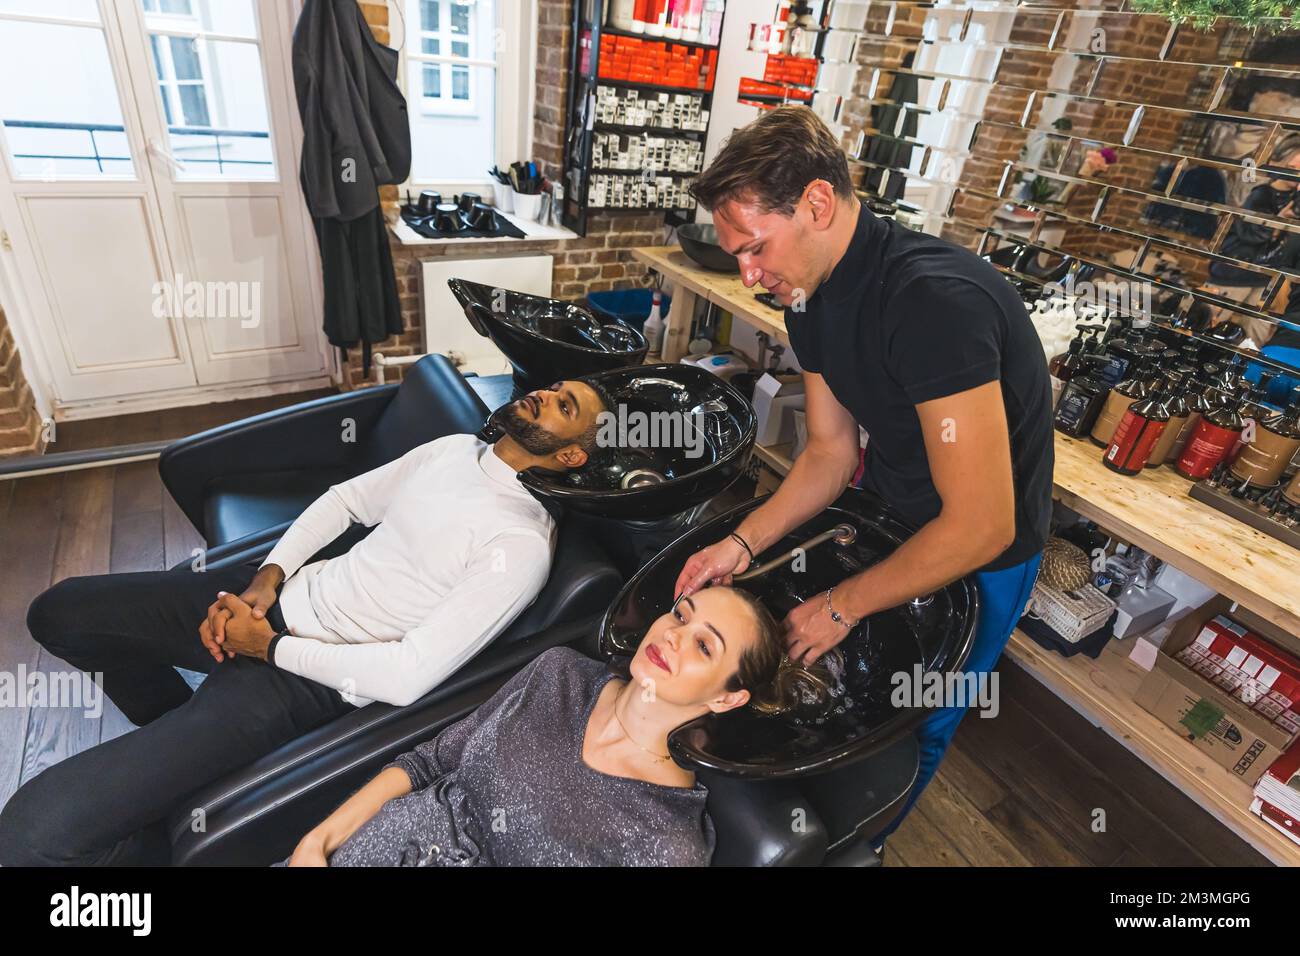 Coiffeur professionnel souriant lavant les cheveux de ses clients masculins et féminins dans un salon de coiffure professionnel. Photo de haute qualité Banque D'Images